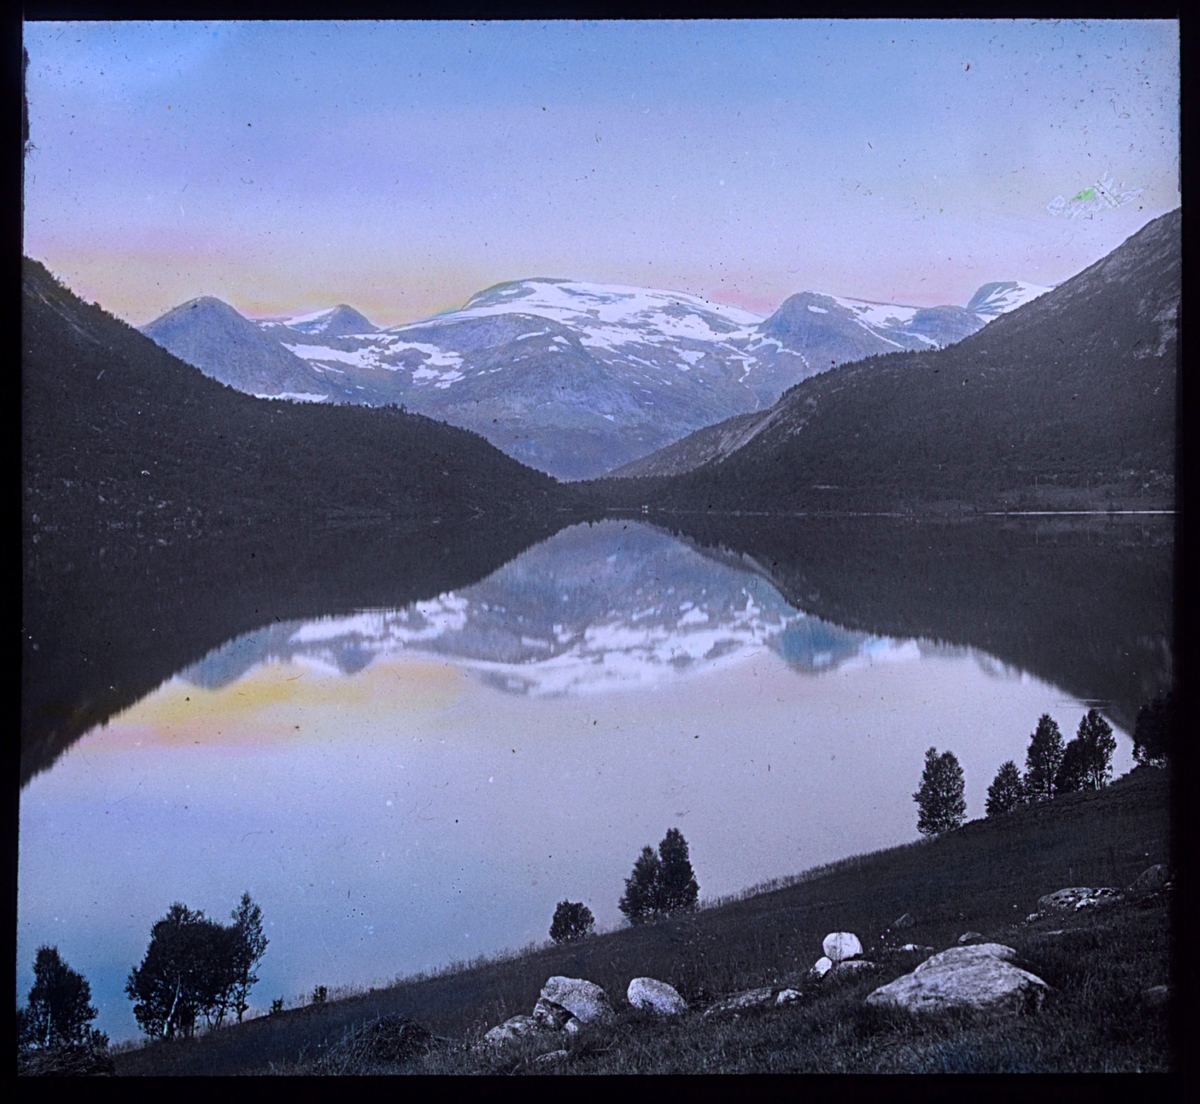 "N.842. Nordlandsnatur. N. 13. Håndkolorert av Alf Schrøder. Bildet viser et blankstille vann eller en fjord, med fjell med snø i bakgrunnen. Det er snøflekker i fjellet, men ved vannet står det bjørketrær med grønt løv. Bildet er kolorert med fargen fra sola på himmelen, muligens er det midnattsolen som er gjenskapt i pasteller med gult og rosa. Fjellet og landskapet speiler seg i vannet.